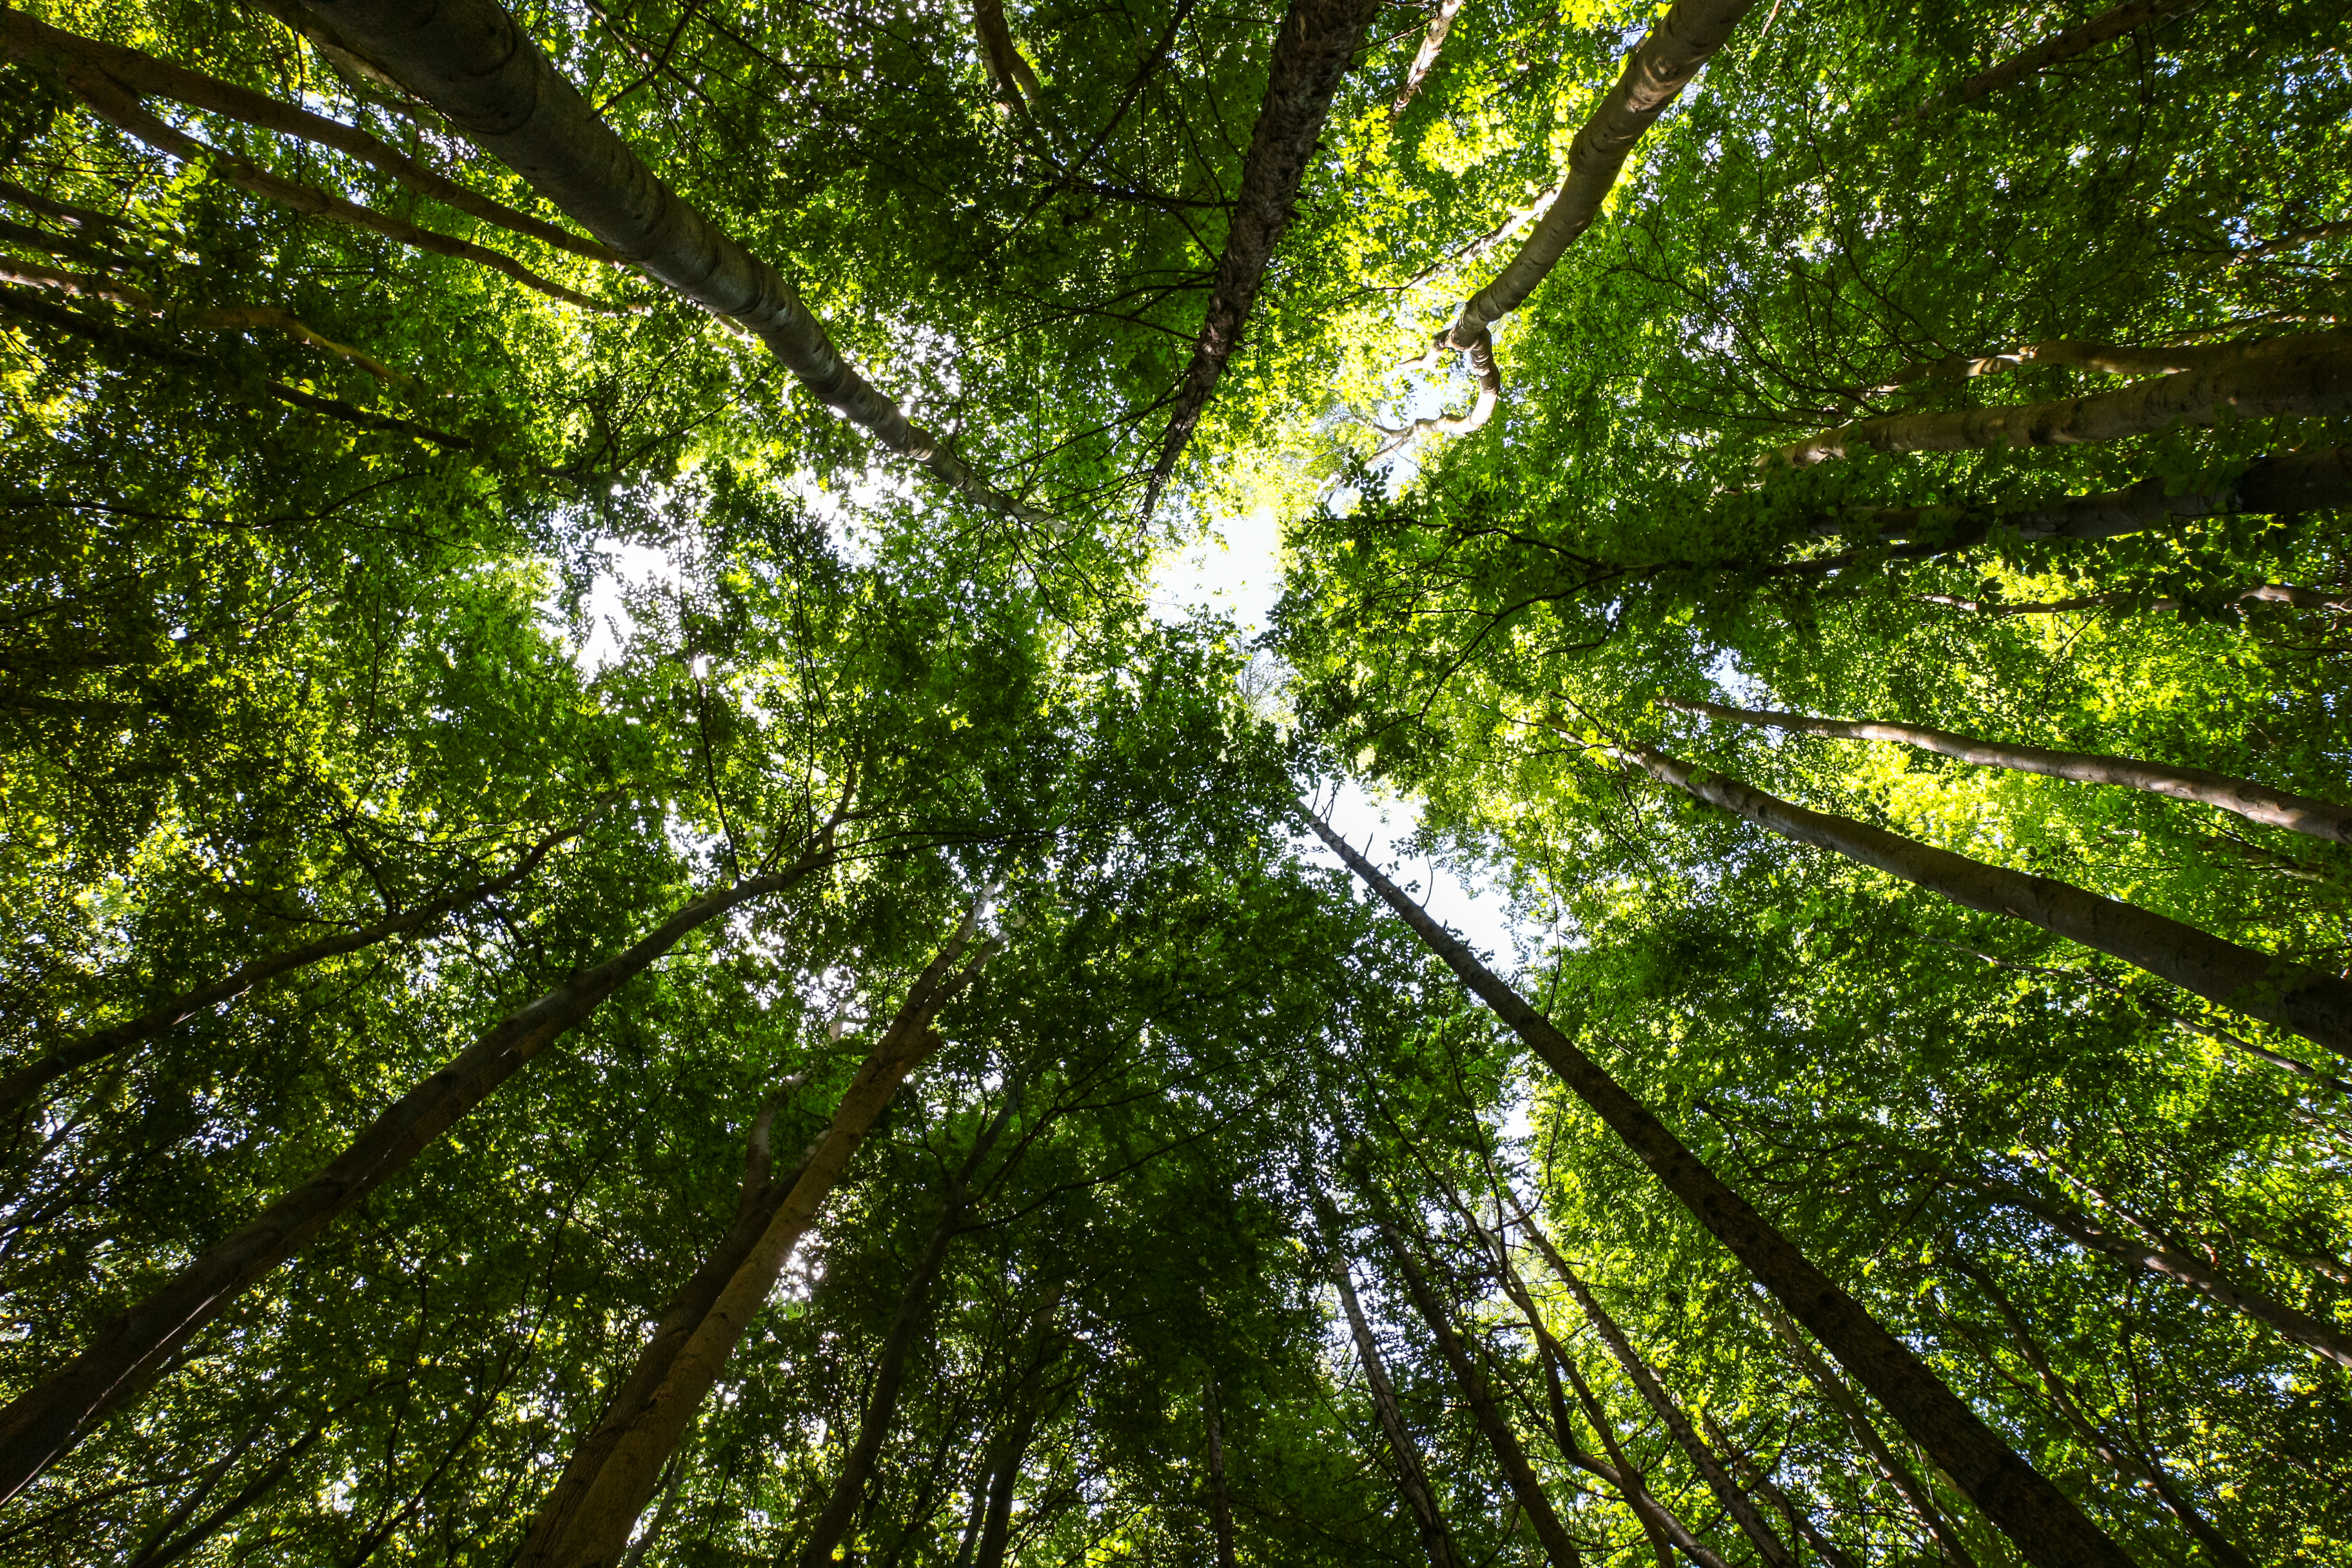 Sprawozdanie specjalne 21/2021: Finansowanie unijne na rzecz różnorodności biologicznej i zapobiegania zmianie klimatu w lasach w UE – pozytywne, lecz ograniczone rezultaty